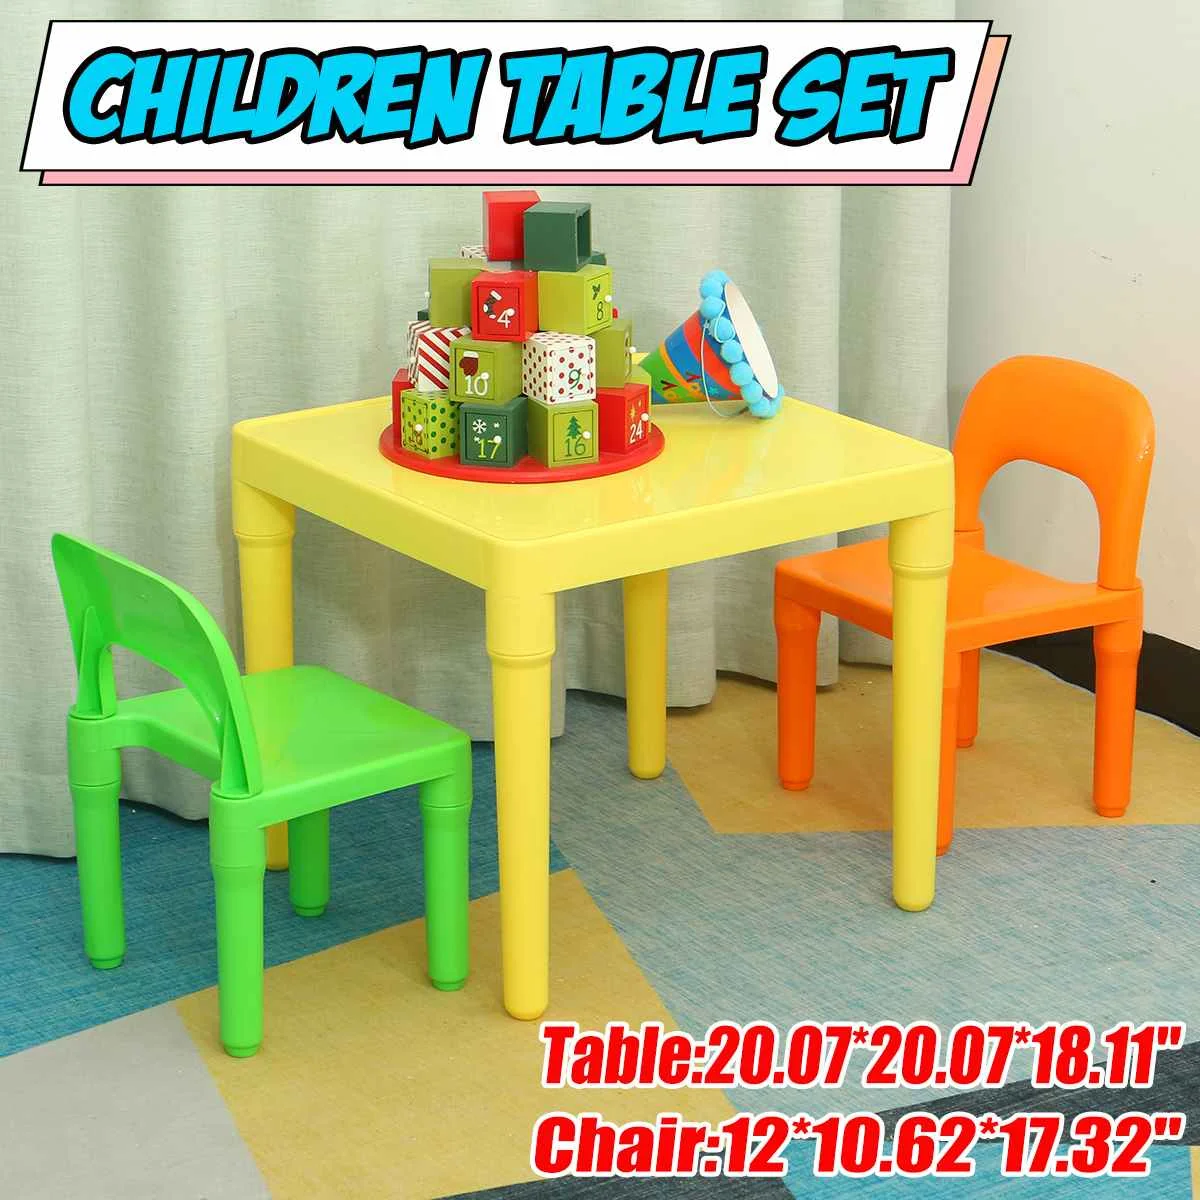 

Набор детских стульев и столов, пластиковый прочный, идеально подходит для кабинета, улицы и помещений, учебный стол с 2 стульями